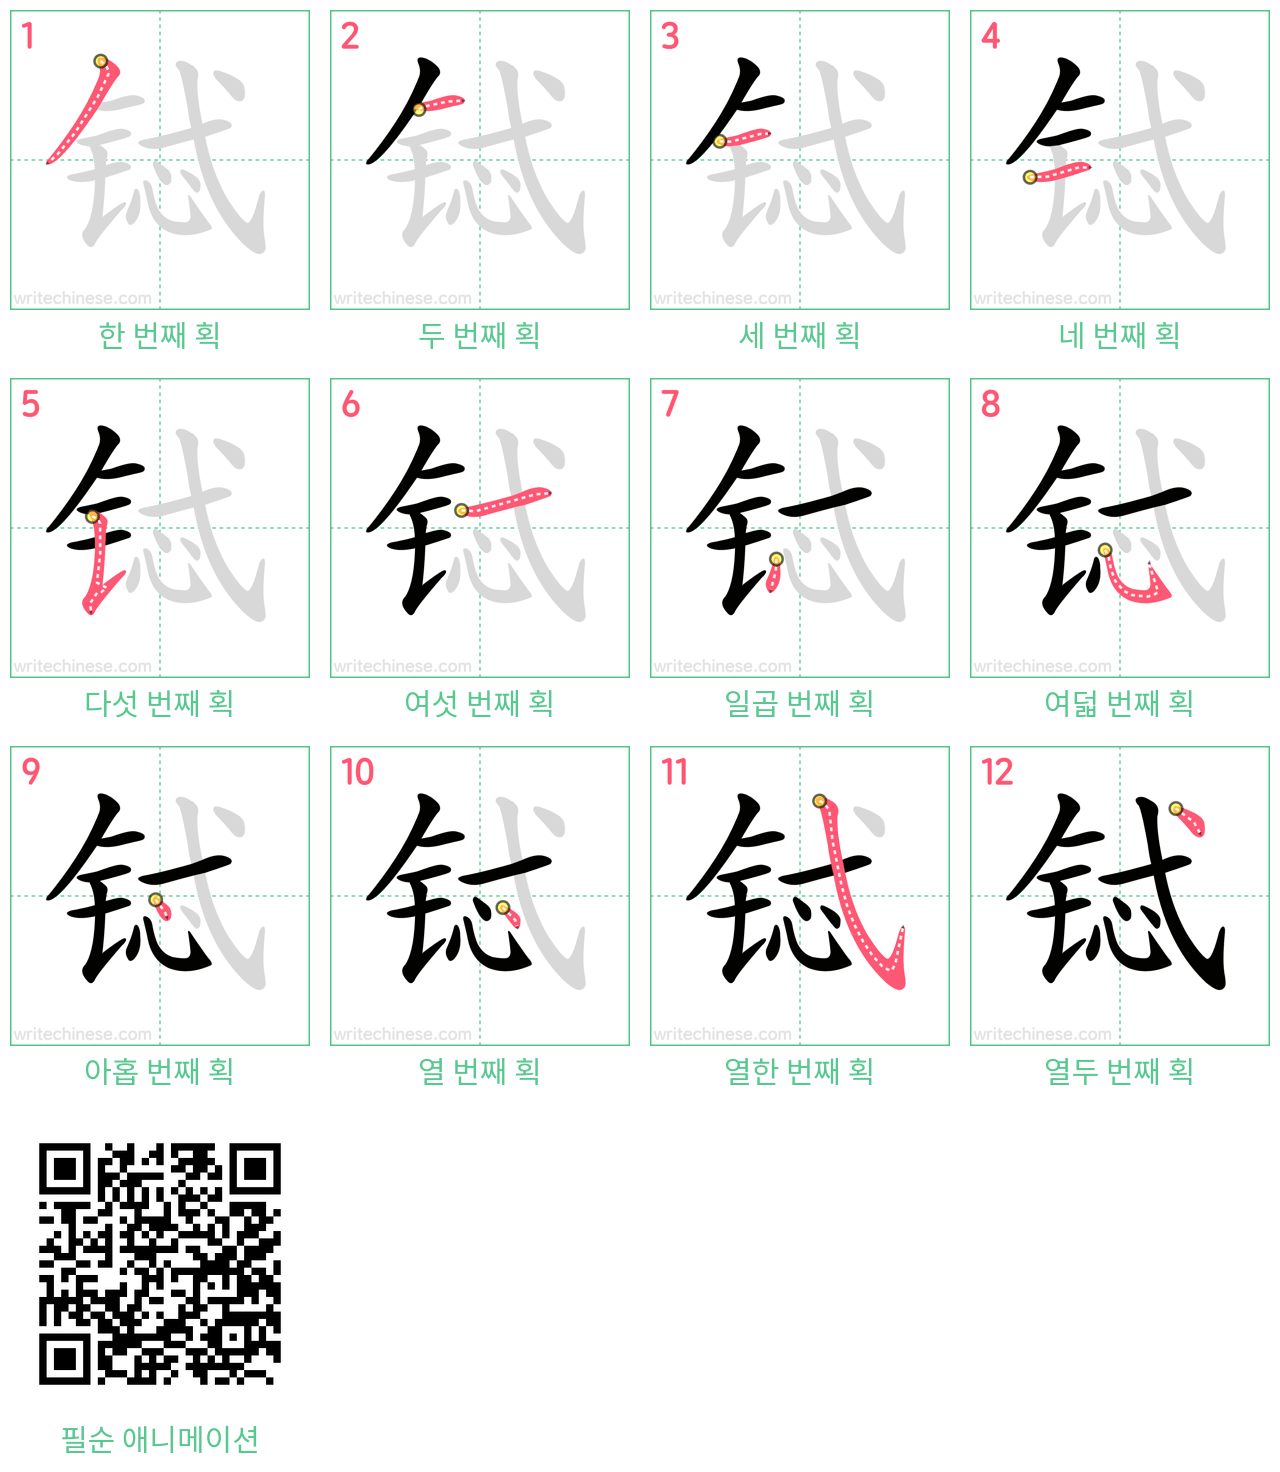 铽 step-by-step stroke order diagrams